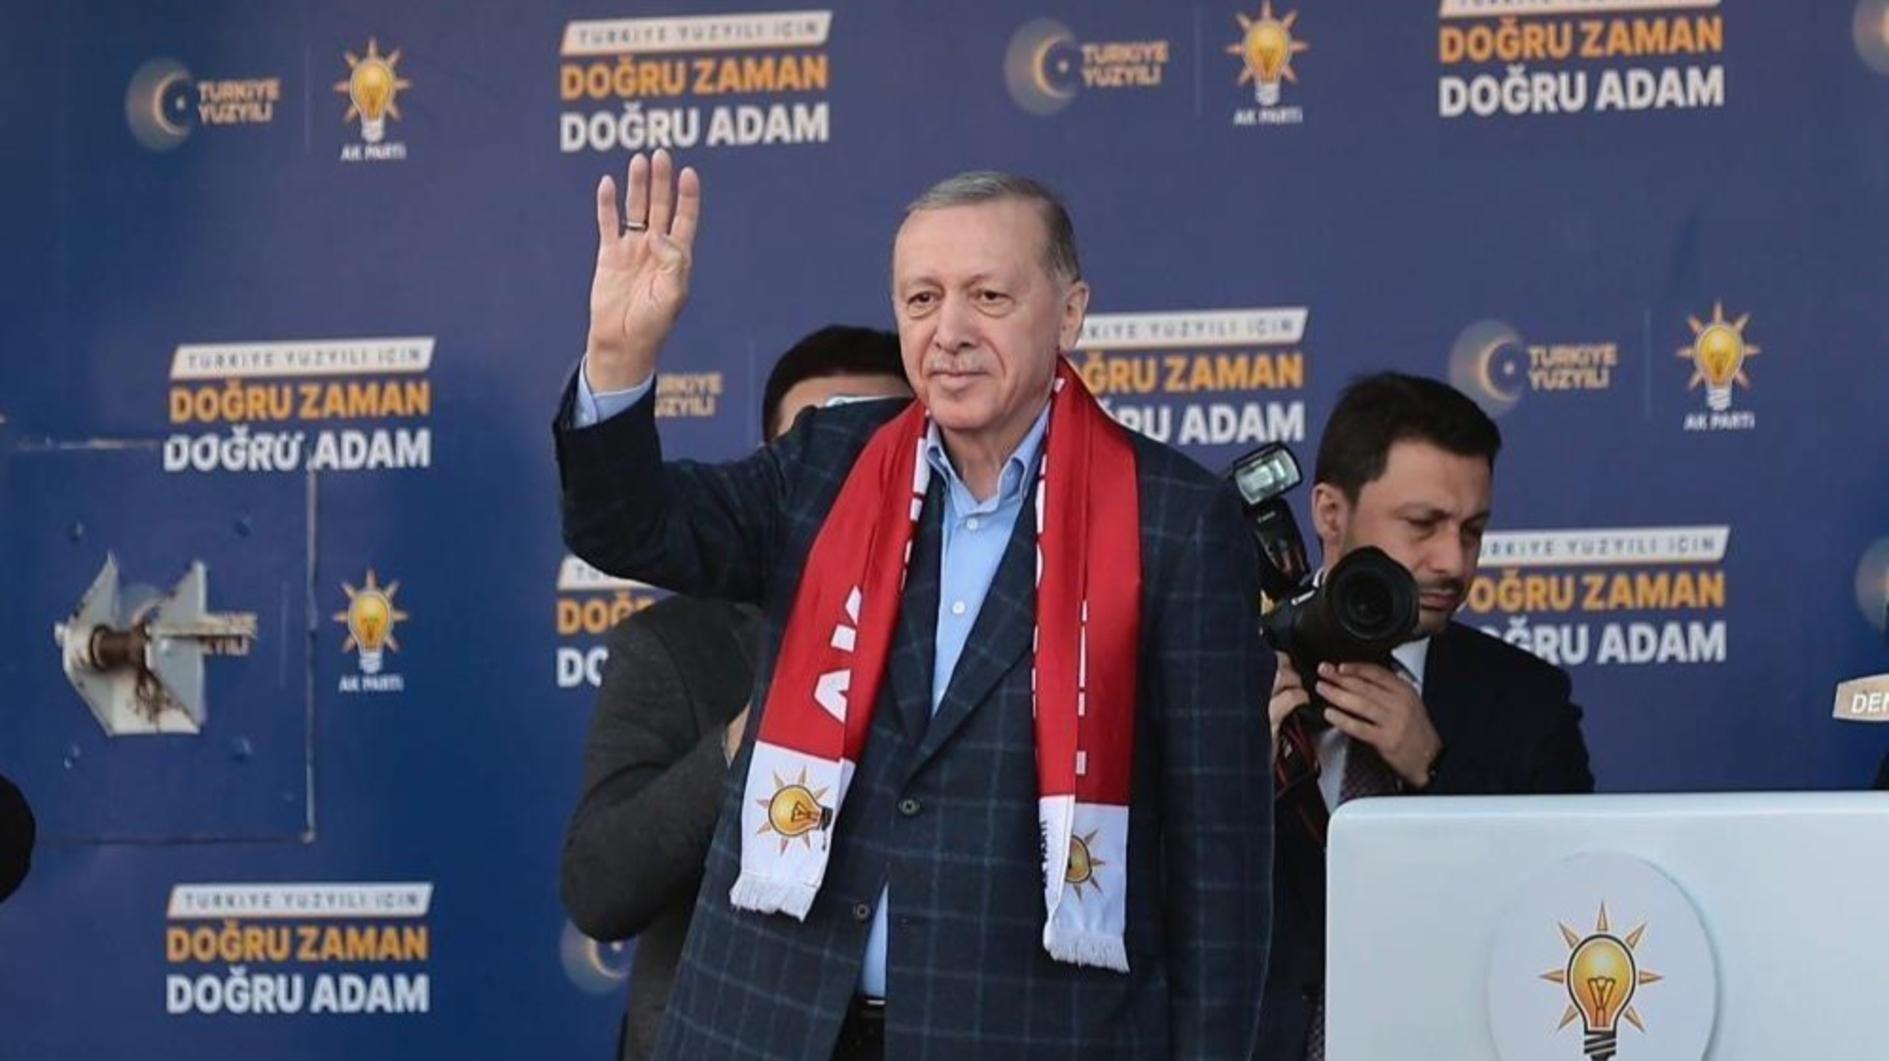 Erdoğan belooft een sterke economische infrastructuur